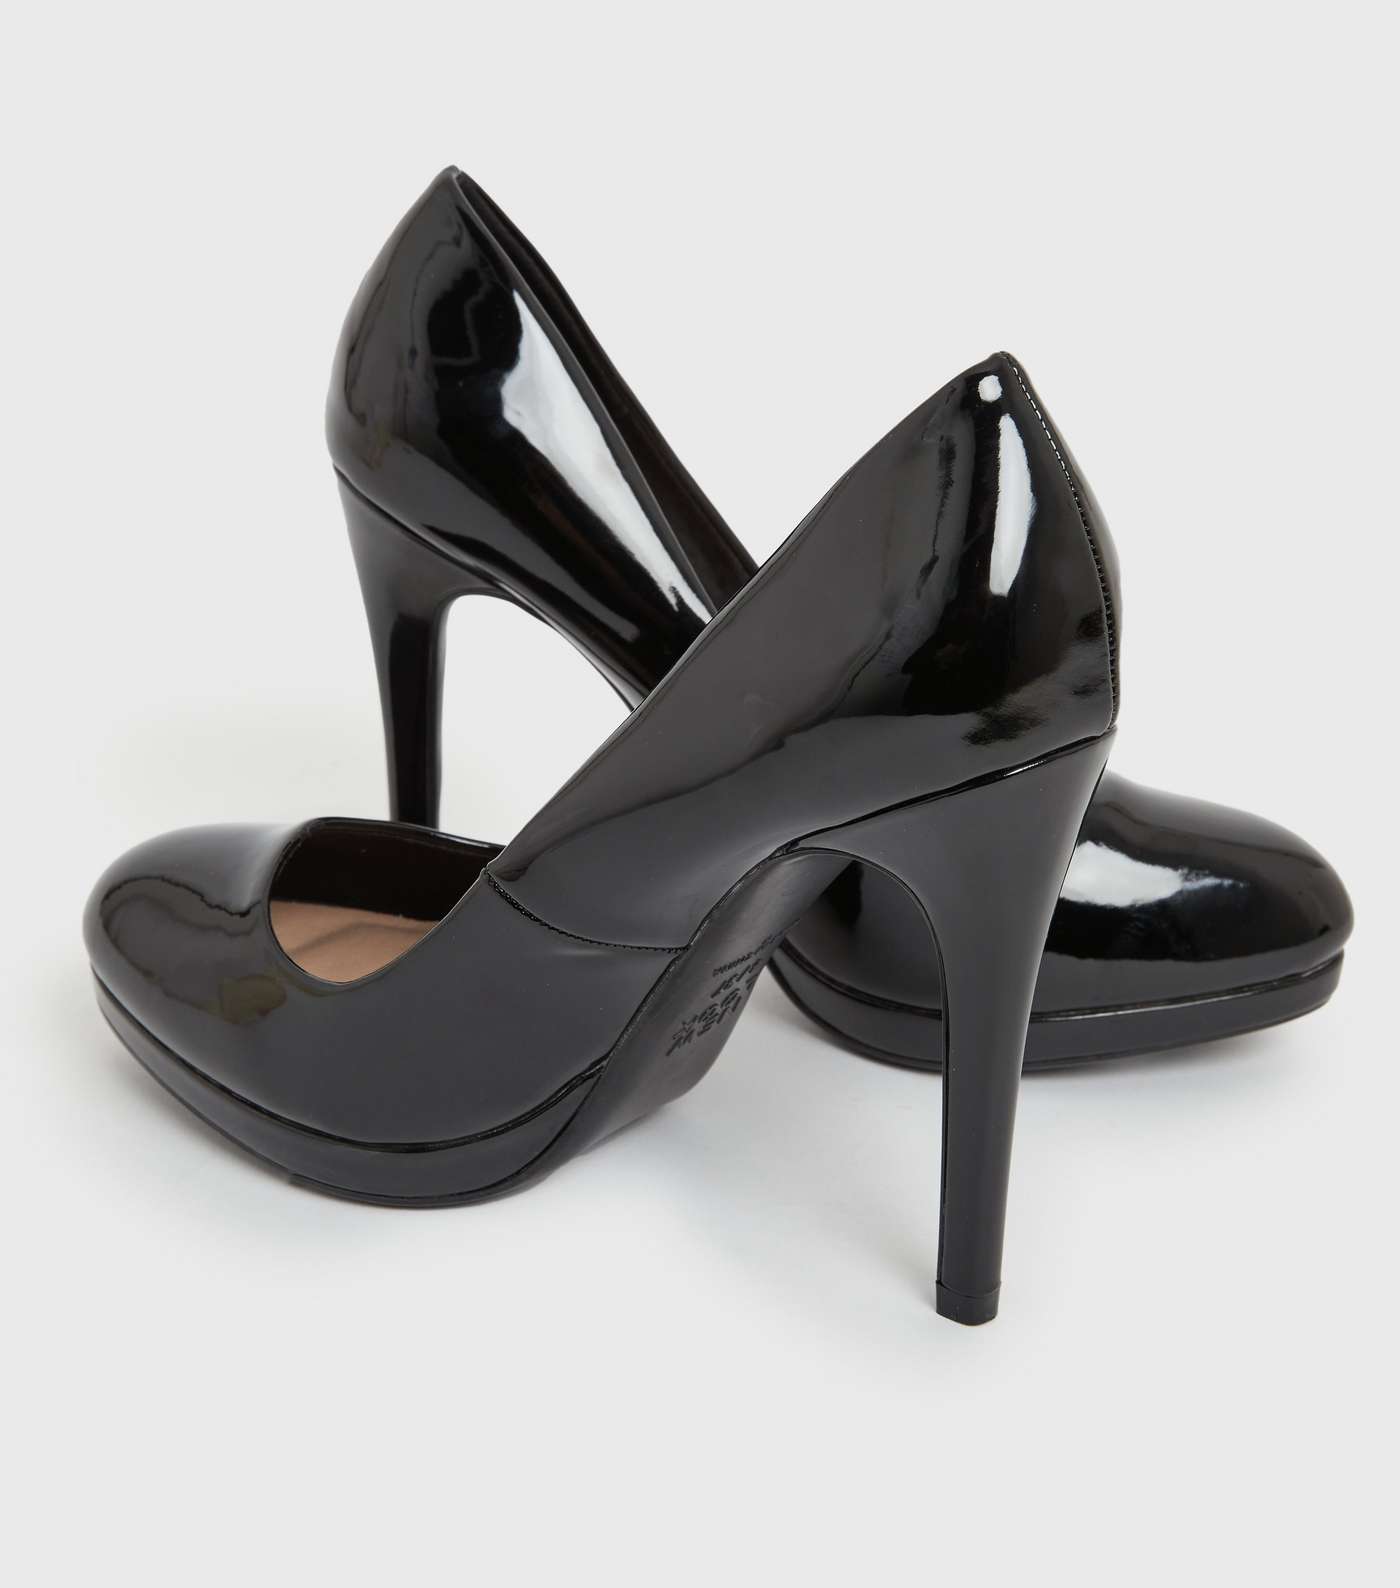 Black Patent Round Platform Stiletto Heel Court Shoes Image 4